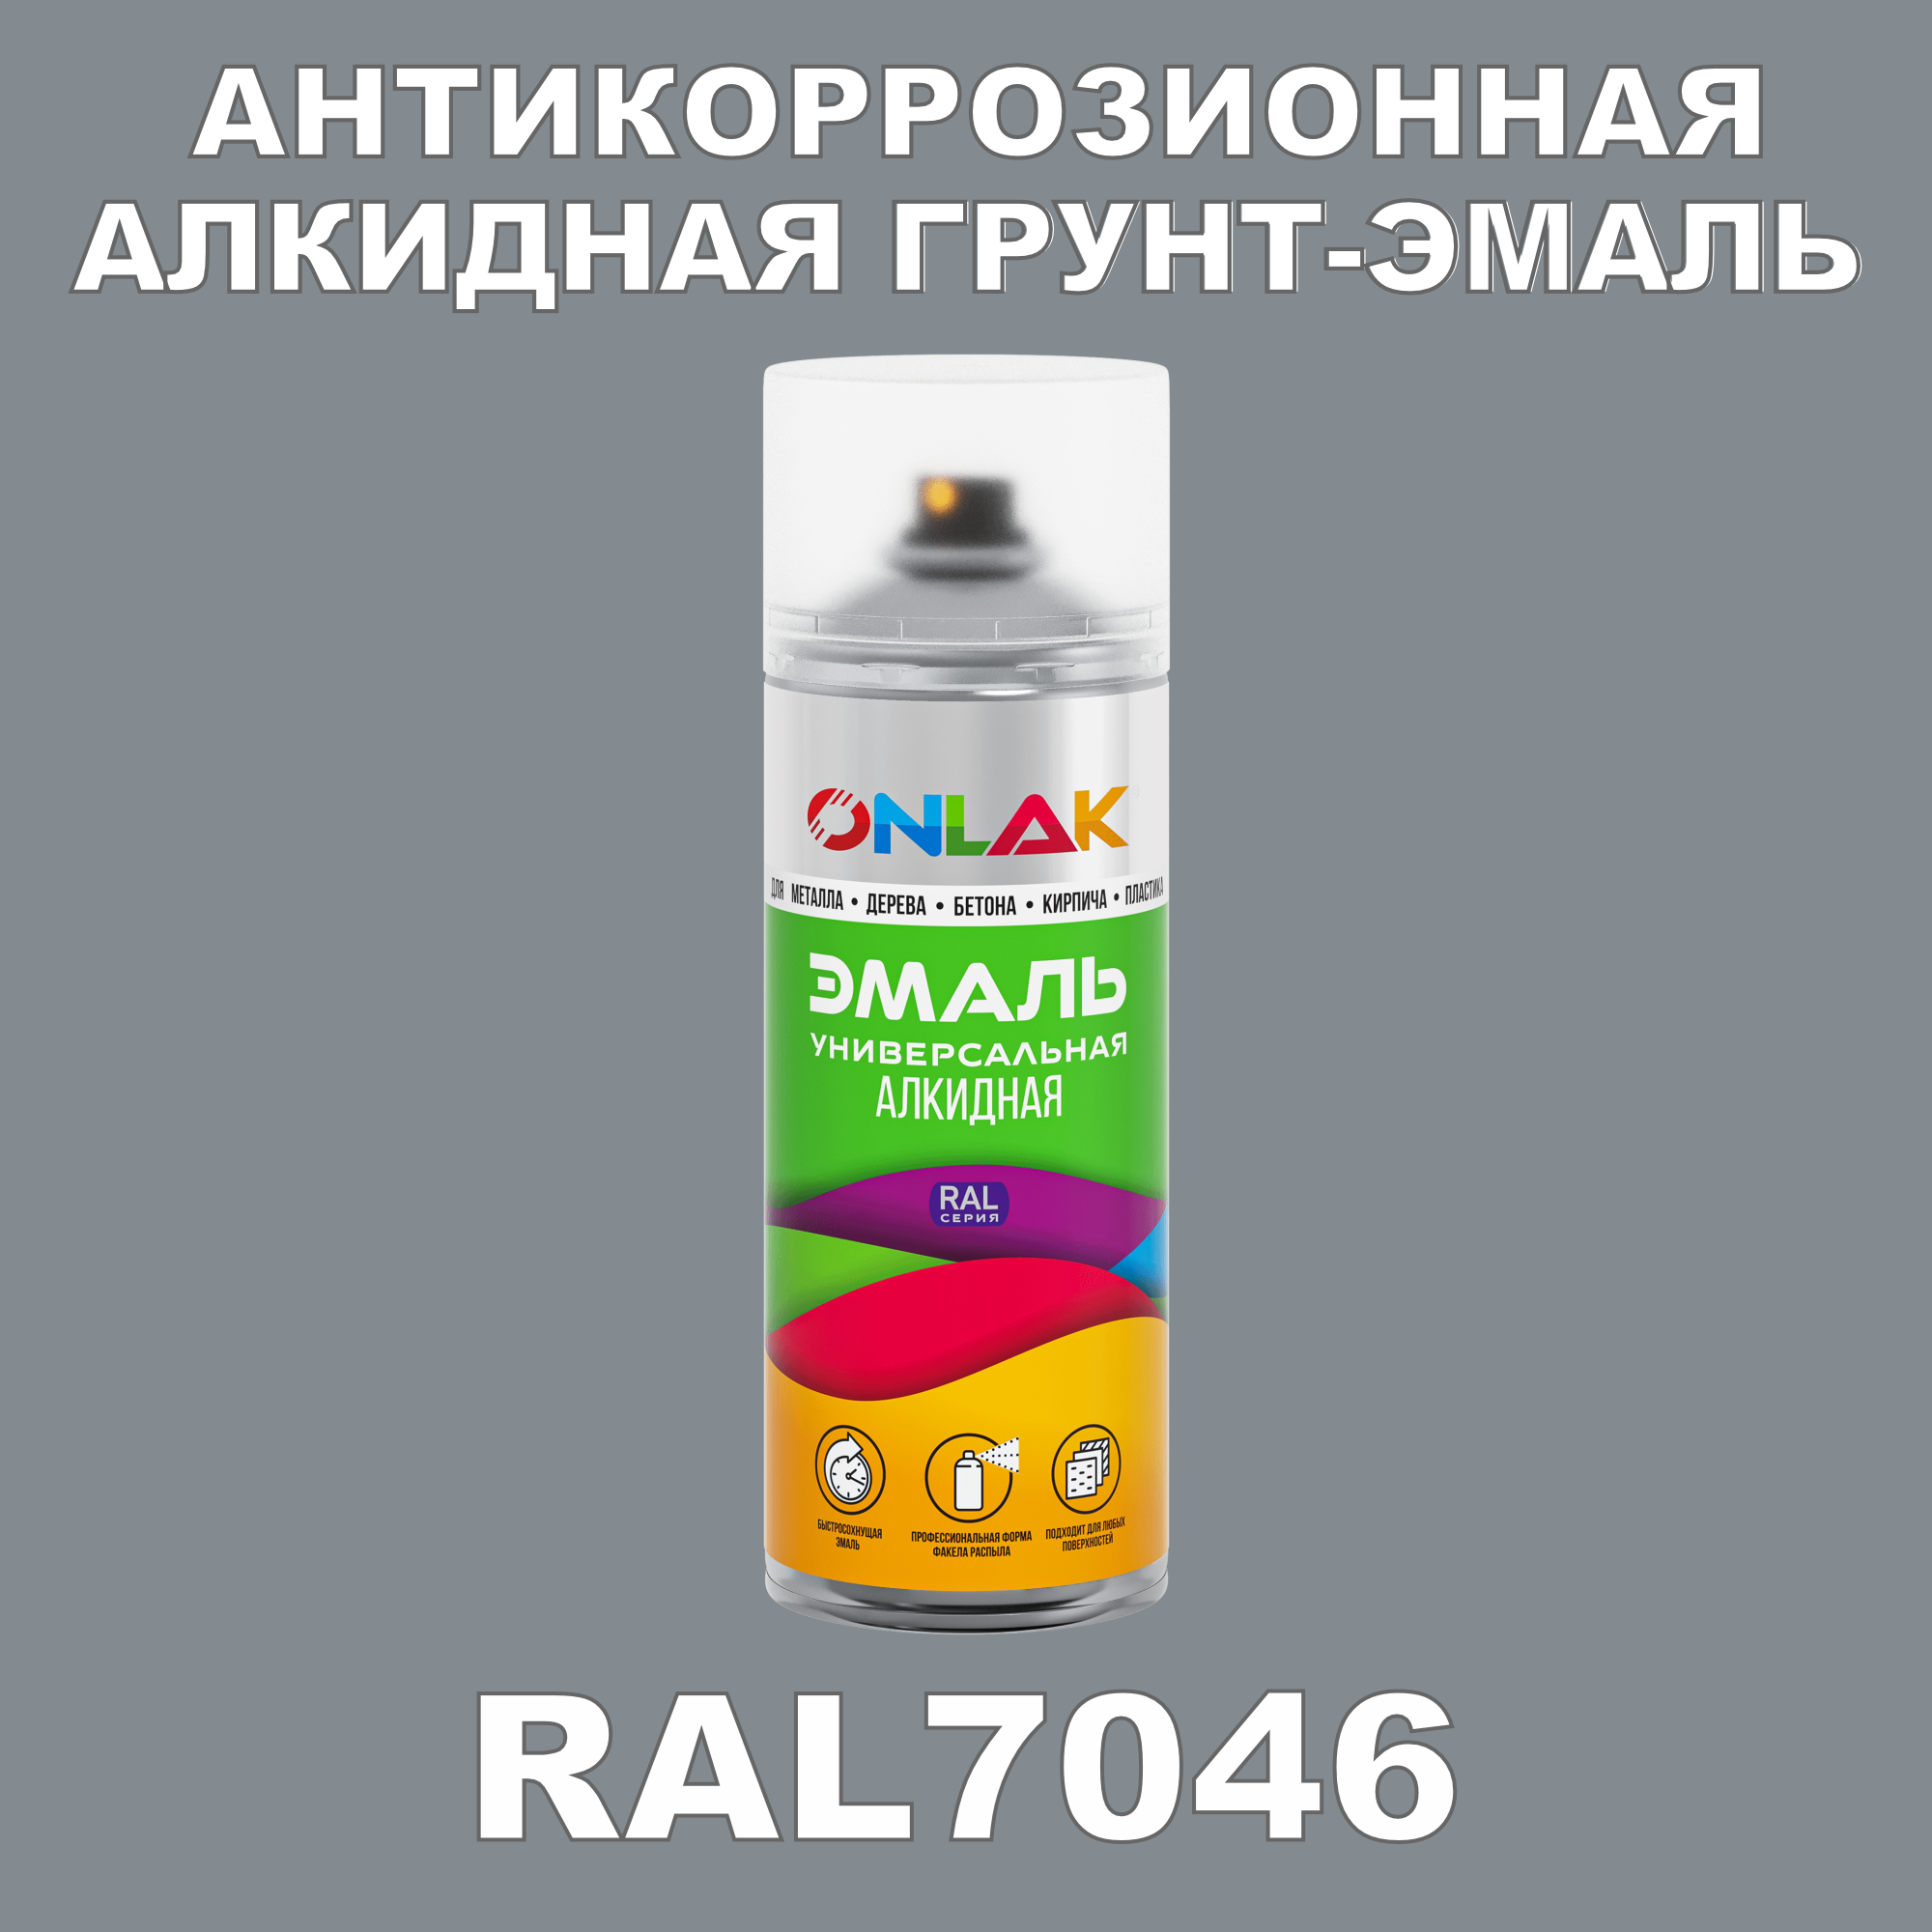 Антикоррозионная грунт-эмаль ONLAK RAL7046 полуматовая для металла и защиты от ржавчины